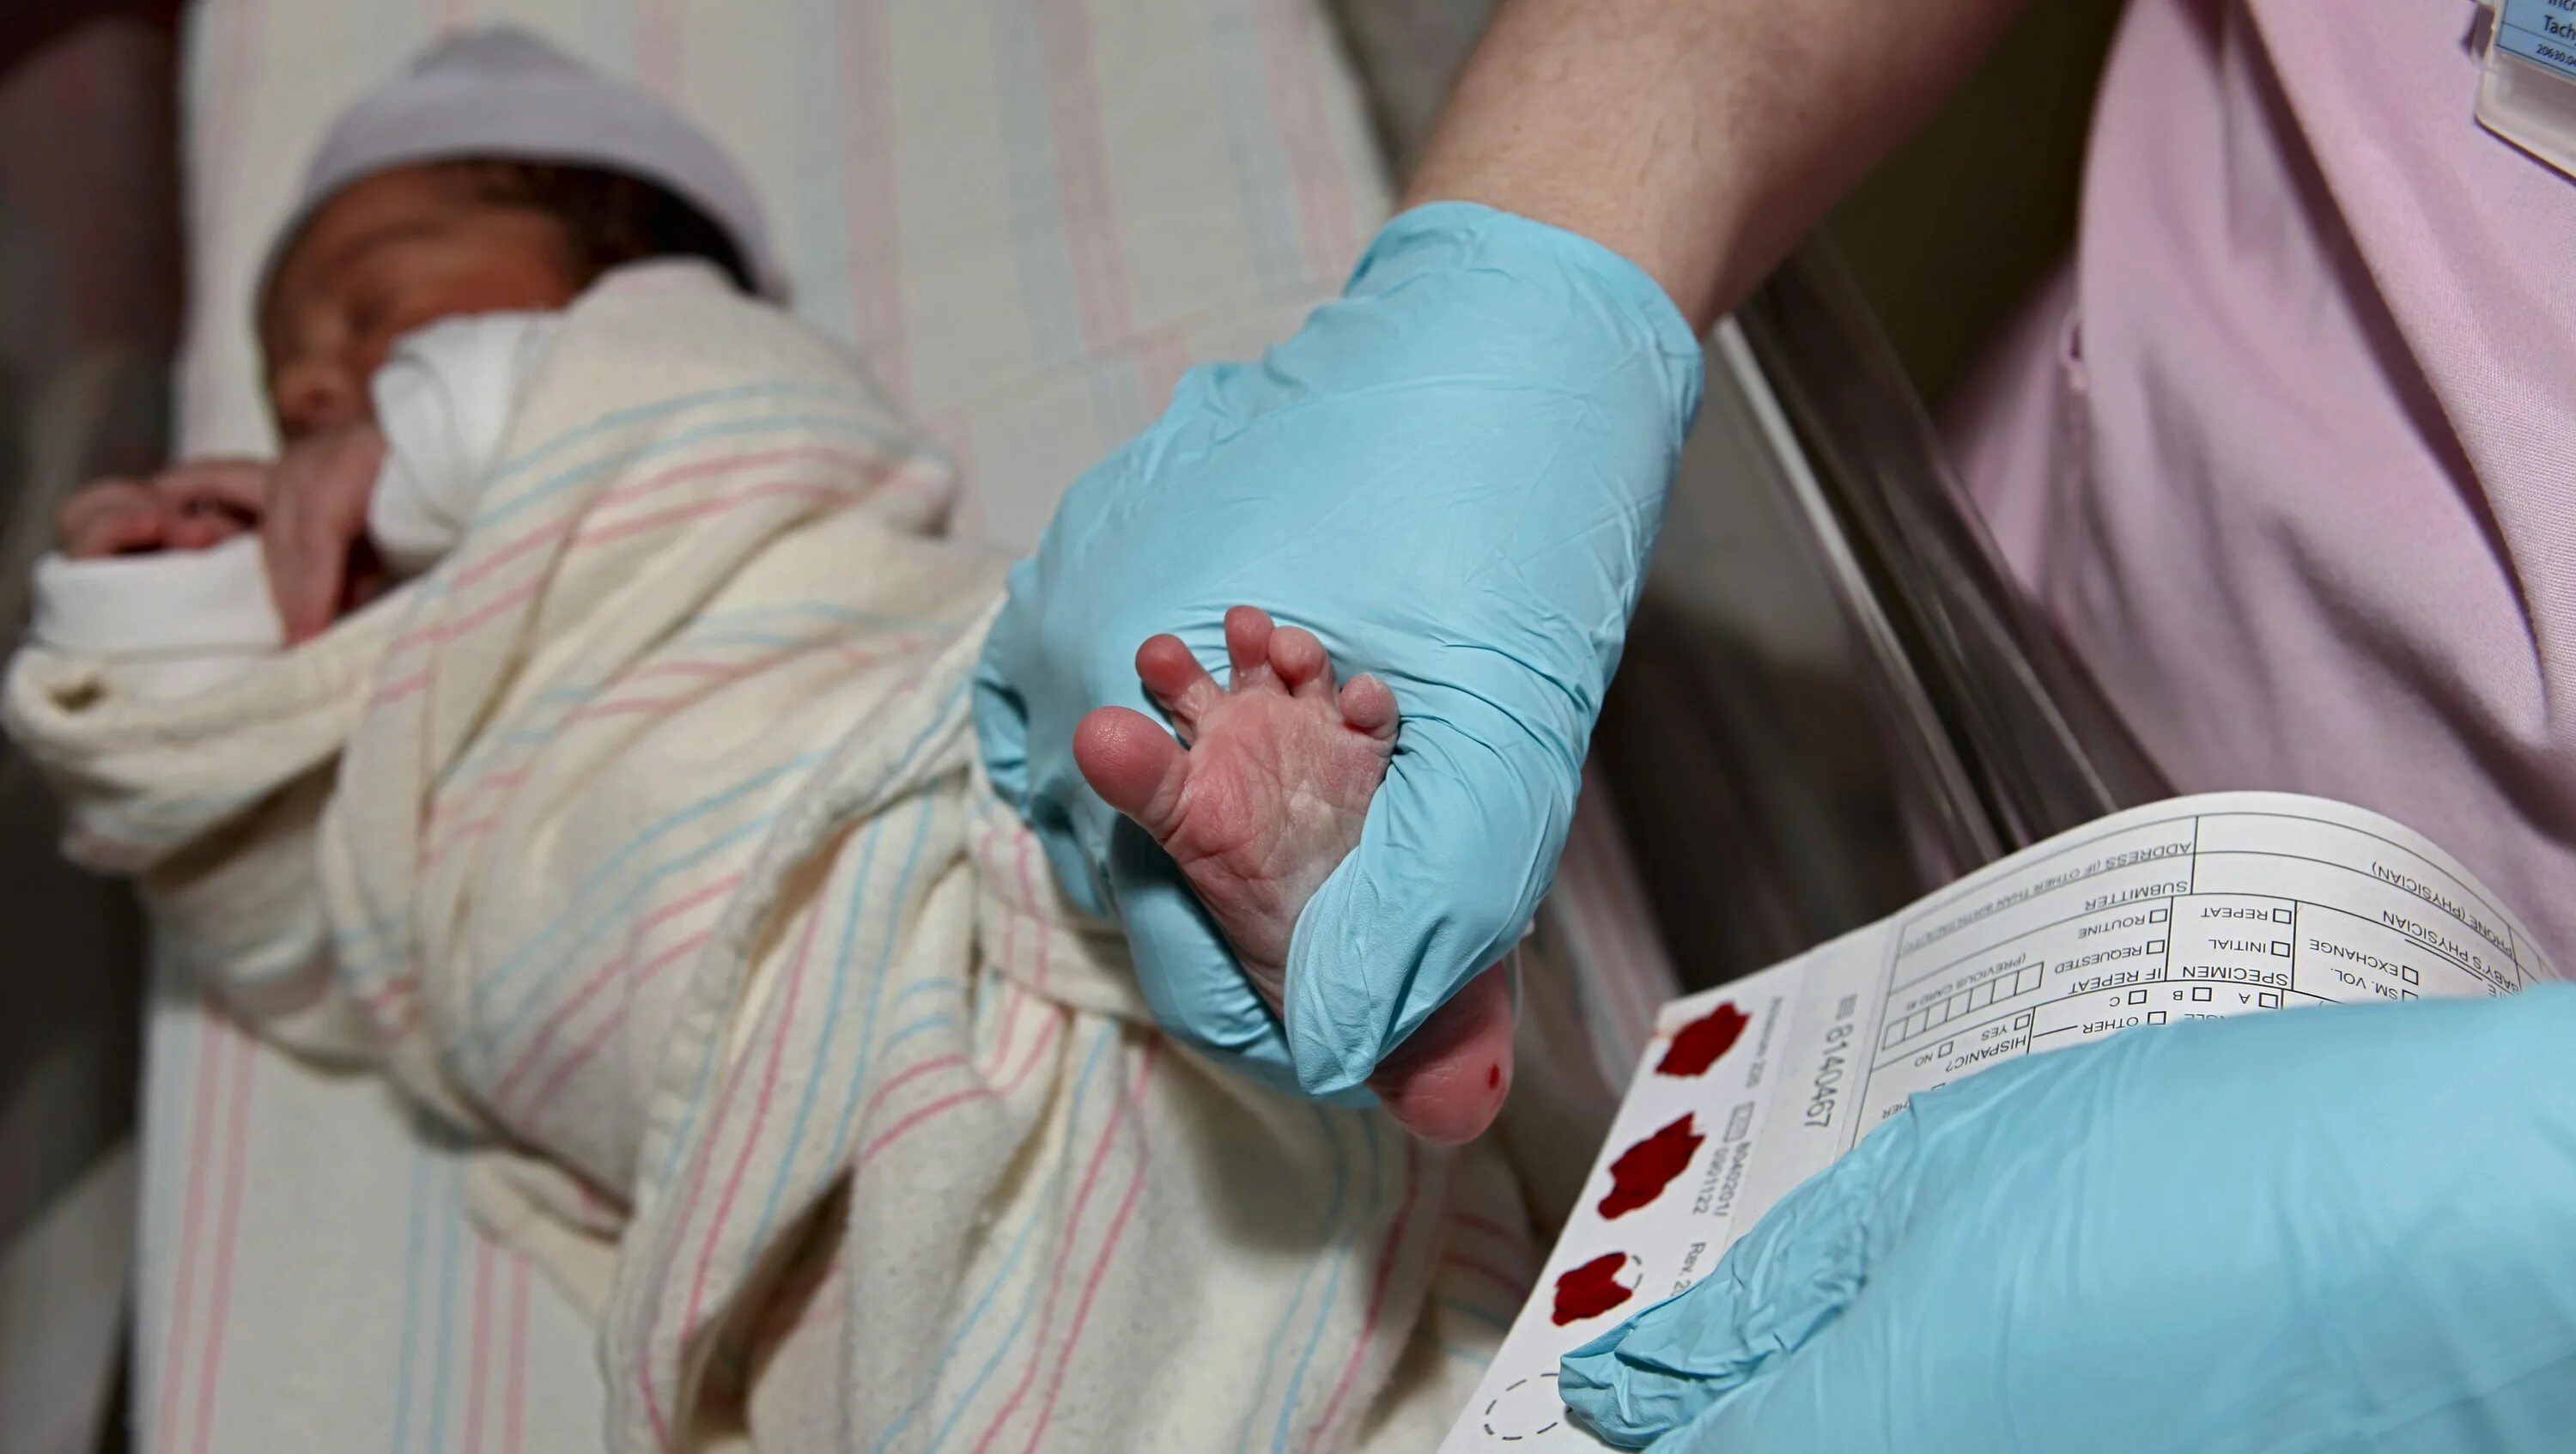 Почему новорожденный не берет. Забор крови на неонатальный скрининг. Забор крови из пятки новорожденного. Неонатальный скрининг новорожденных. Забор крови у новорожденного на неонатальный скрининг.